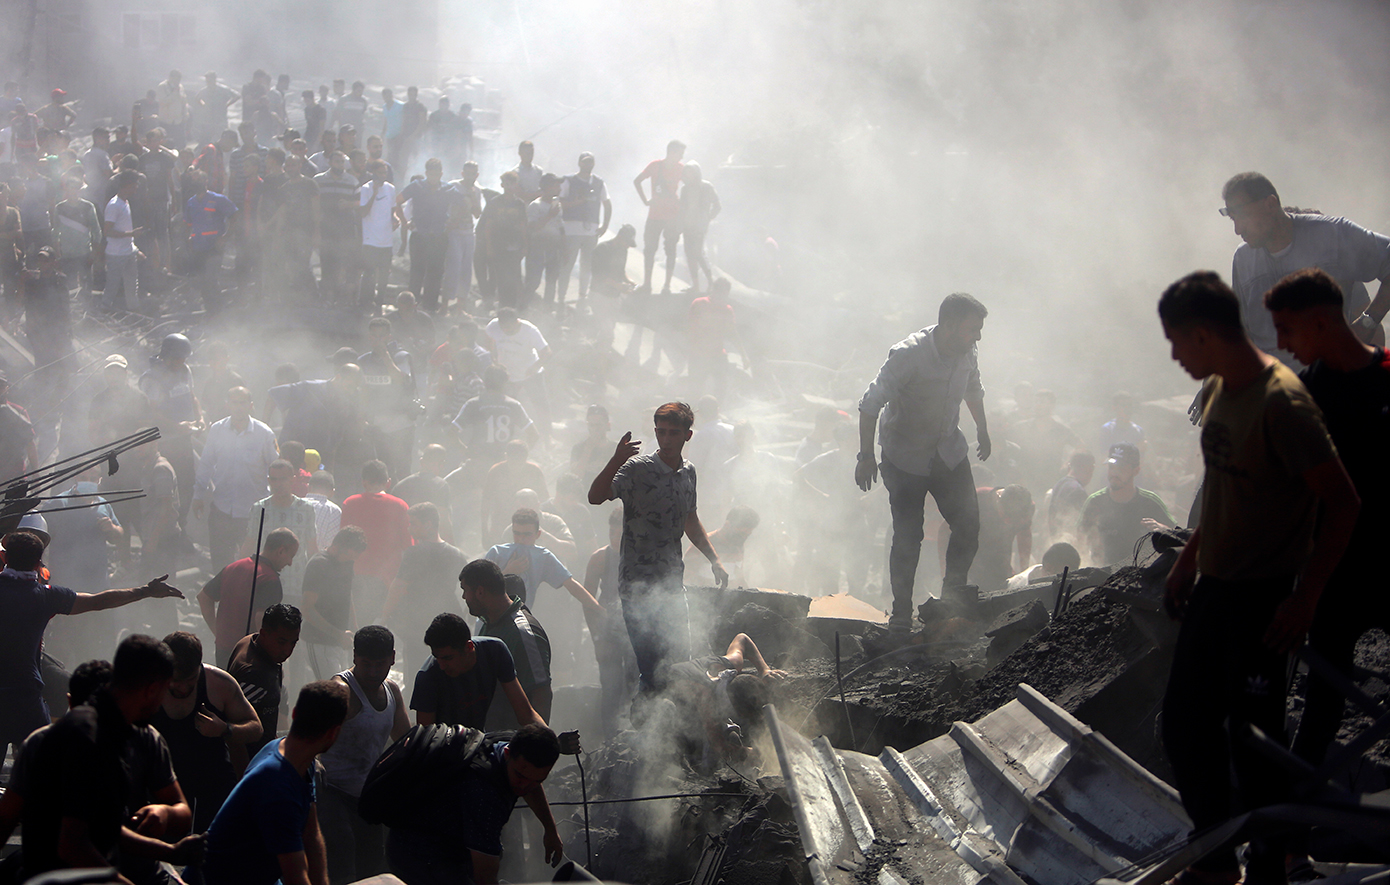 Χάος στη Γάζα &#8211; Ομάδες ενόπλων άρπαξαν από χρηματοκιβώτια τραπεζών ισραηλινά σέκελ αξίας εκατομμυρίων ευρώ